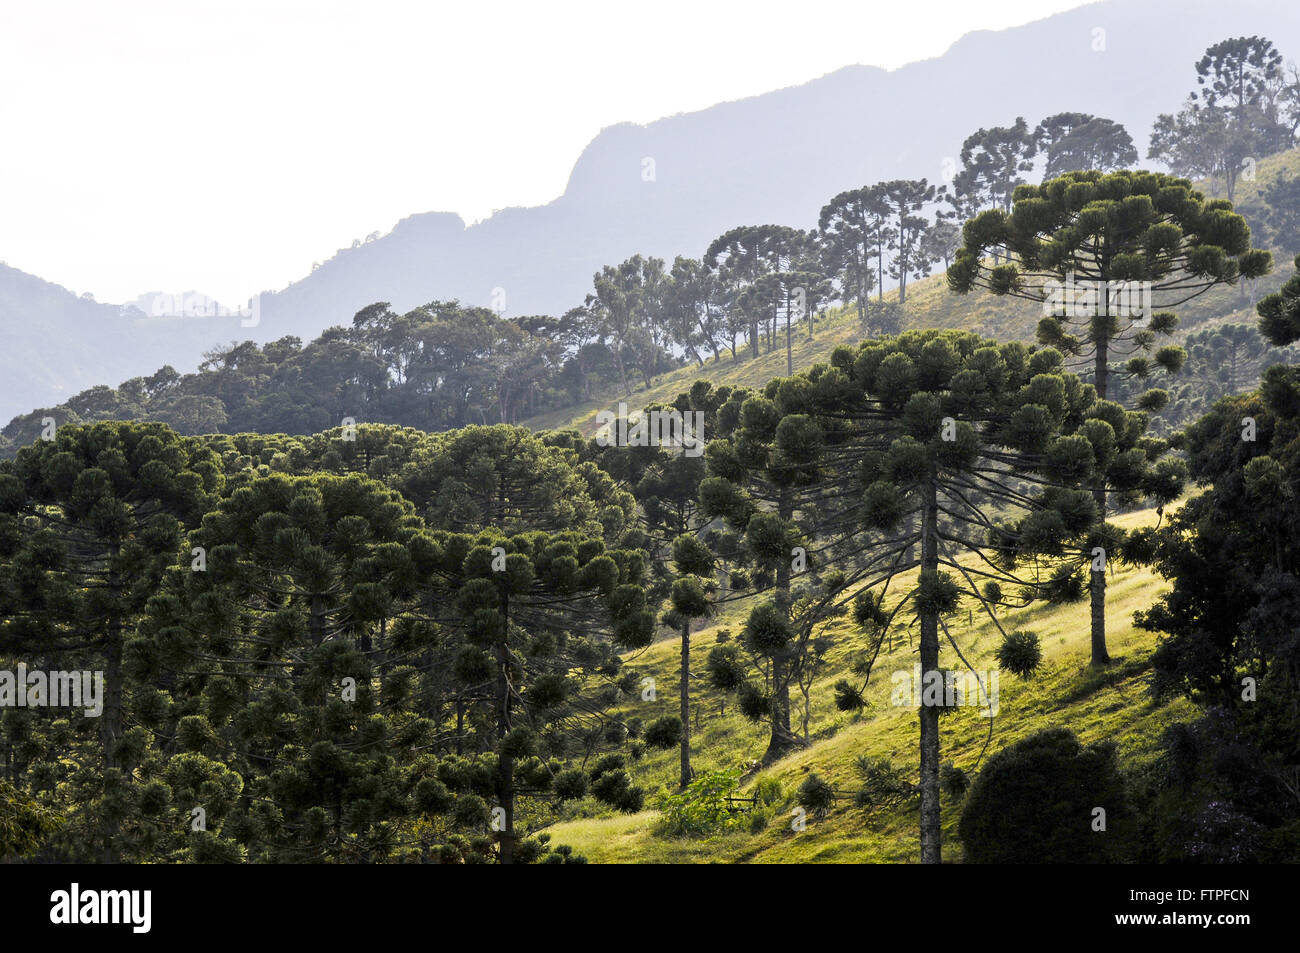 Araukarien im ländlichen Luminosa Stadt Bezirk von Brazopolis - südlich von Minas Gerais Stockfoto